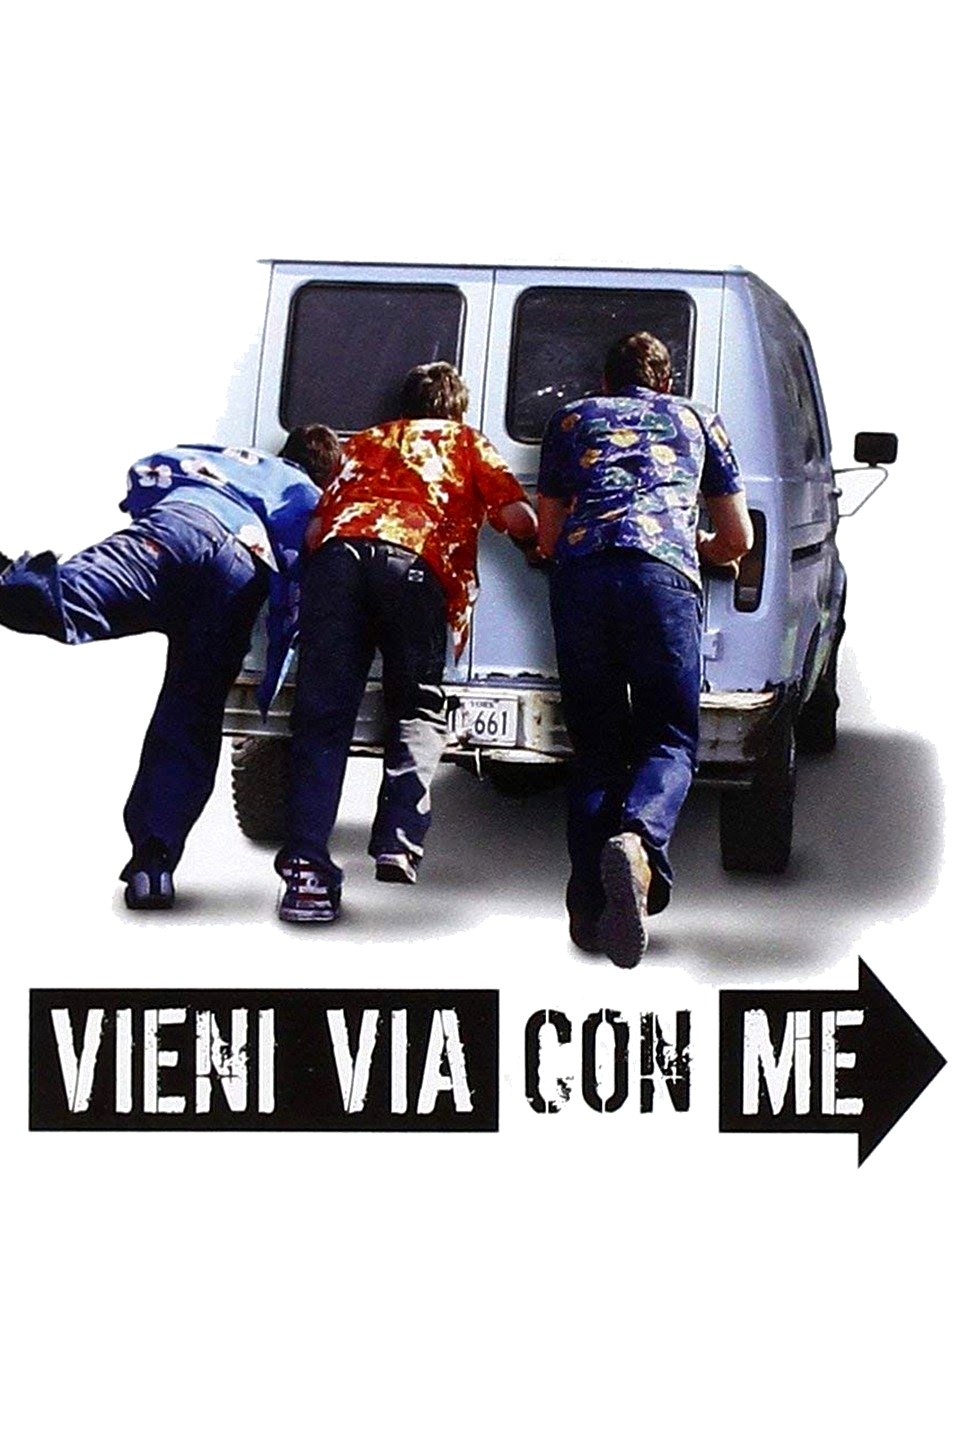 Vieni via con me (2004)